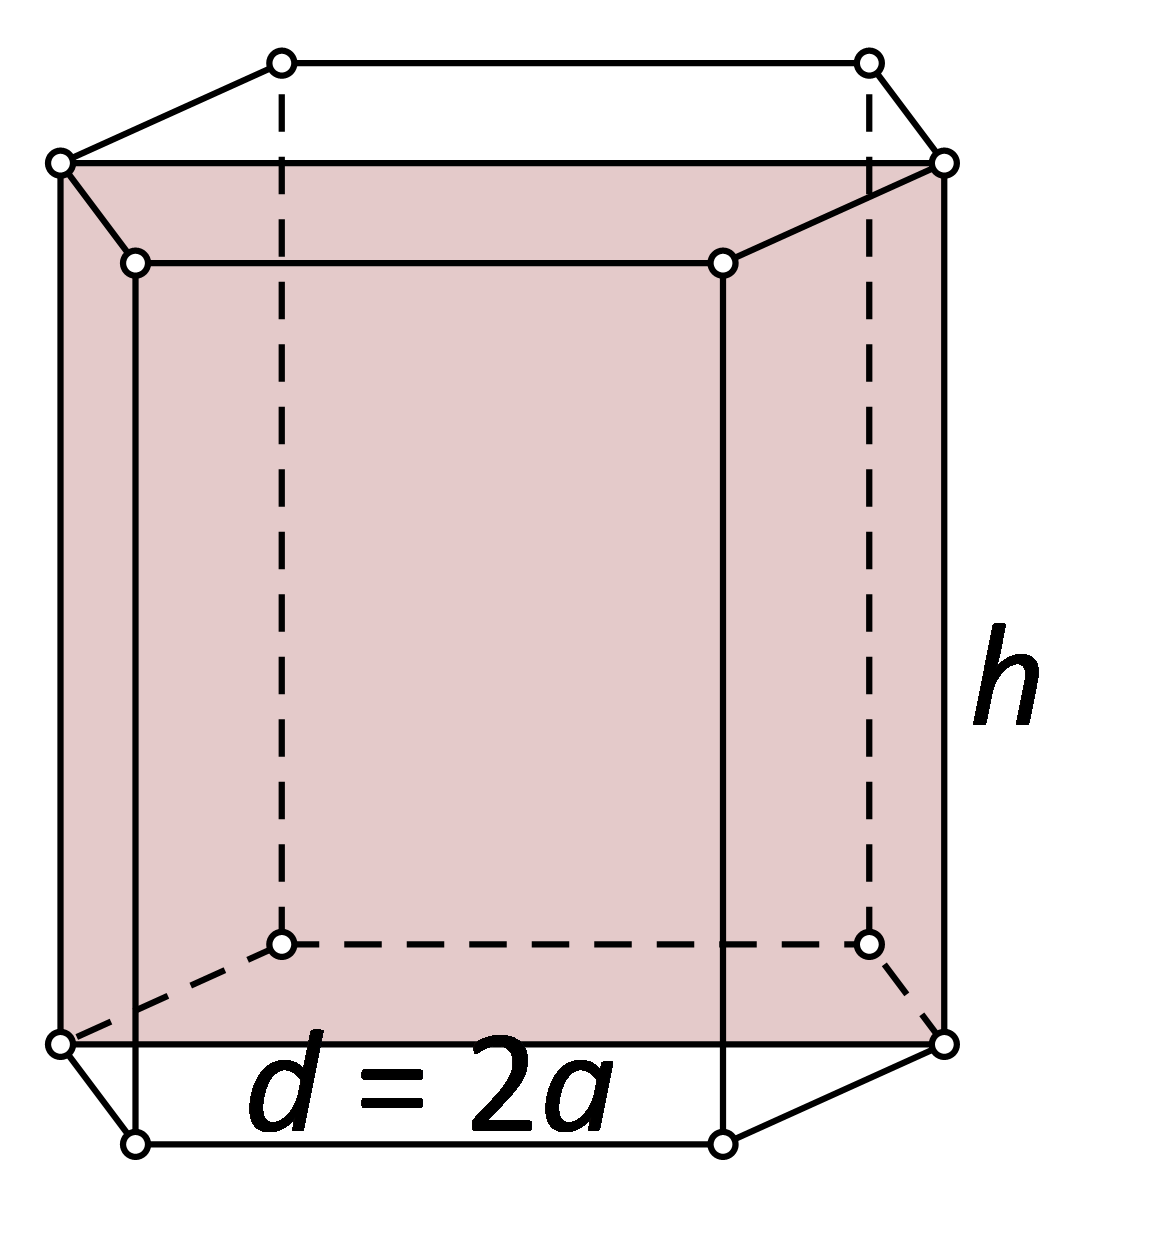 Slika prikazuje kvadrat kao dijagonalni presjek pravilne šesterostrane prizme